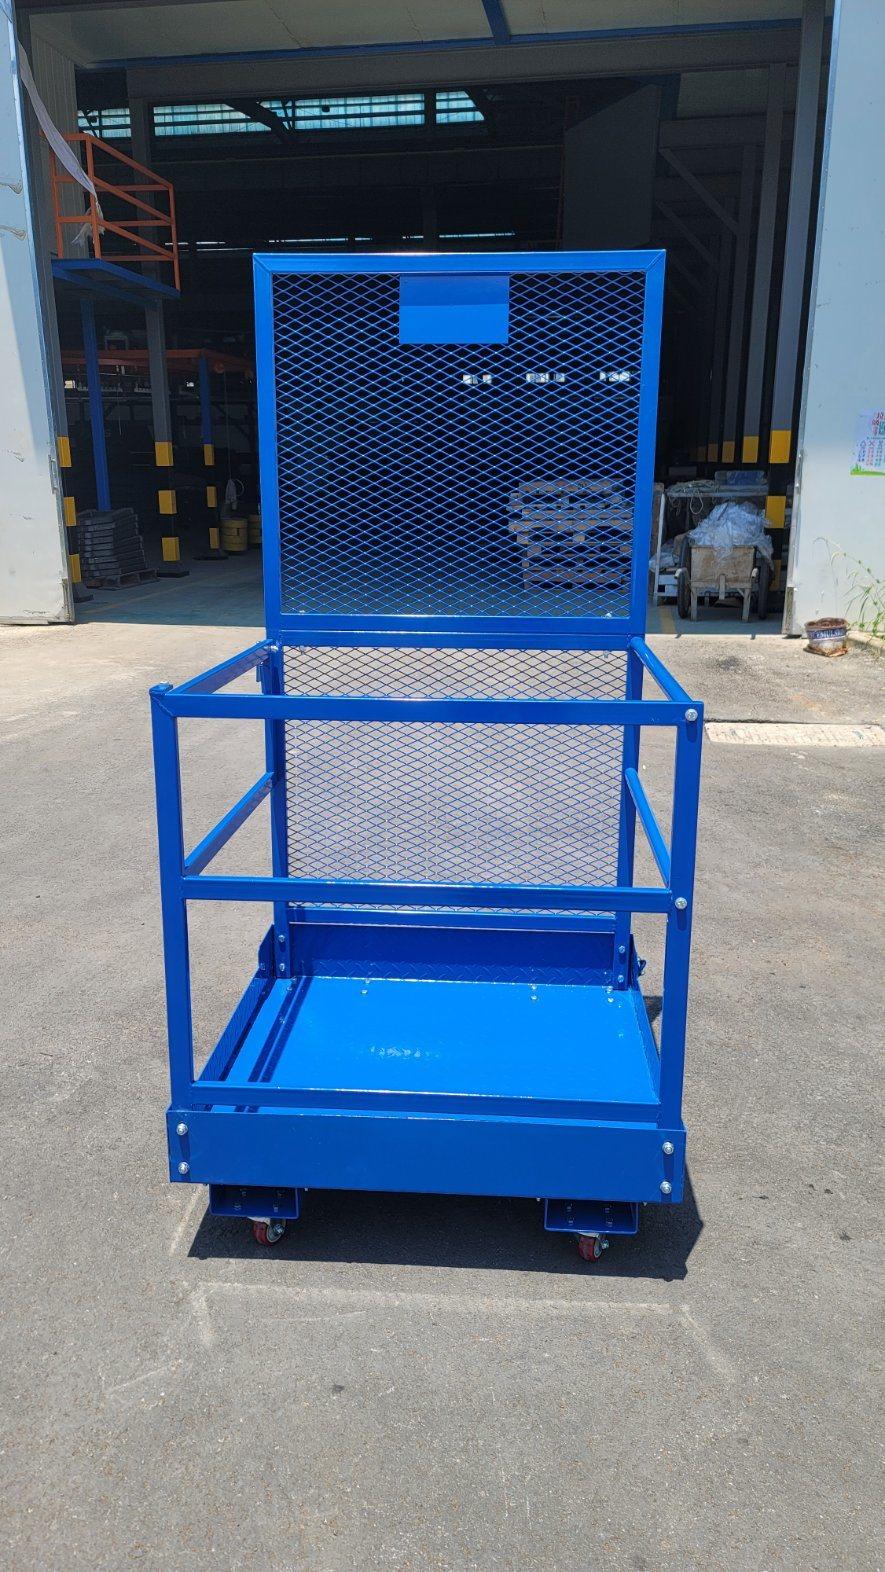 Easy Install China Brand Safety Forklift Safety Cage/Working Platform Loader Plafform Safety Platform